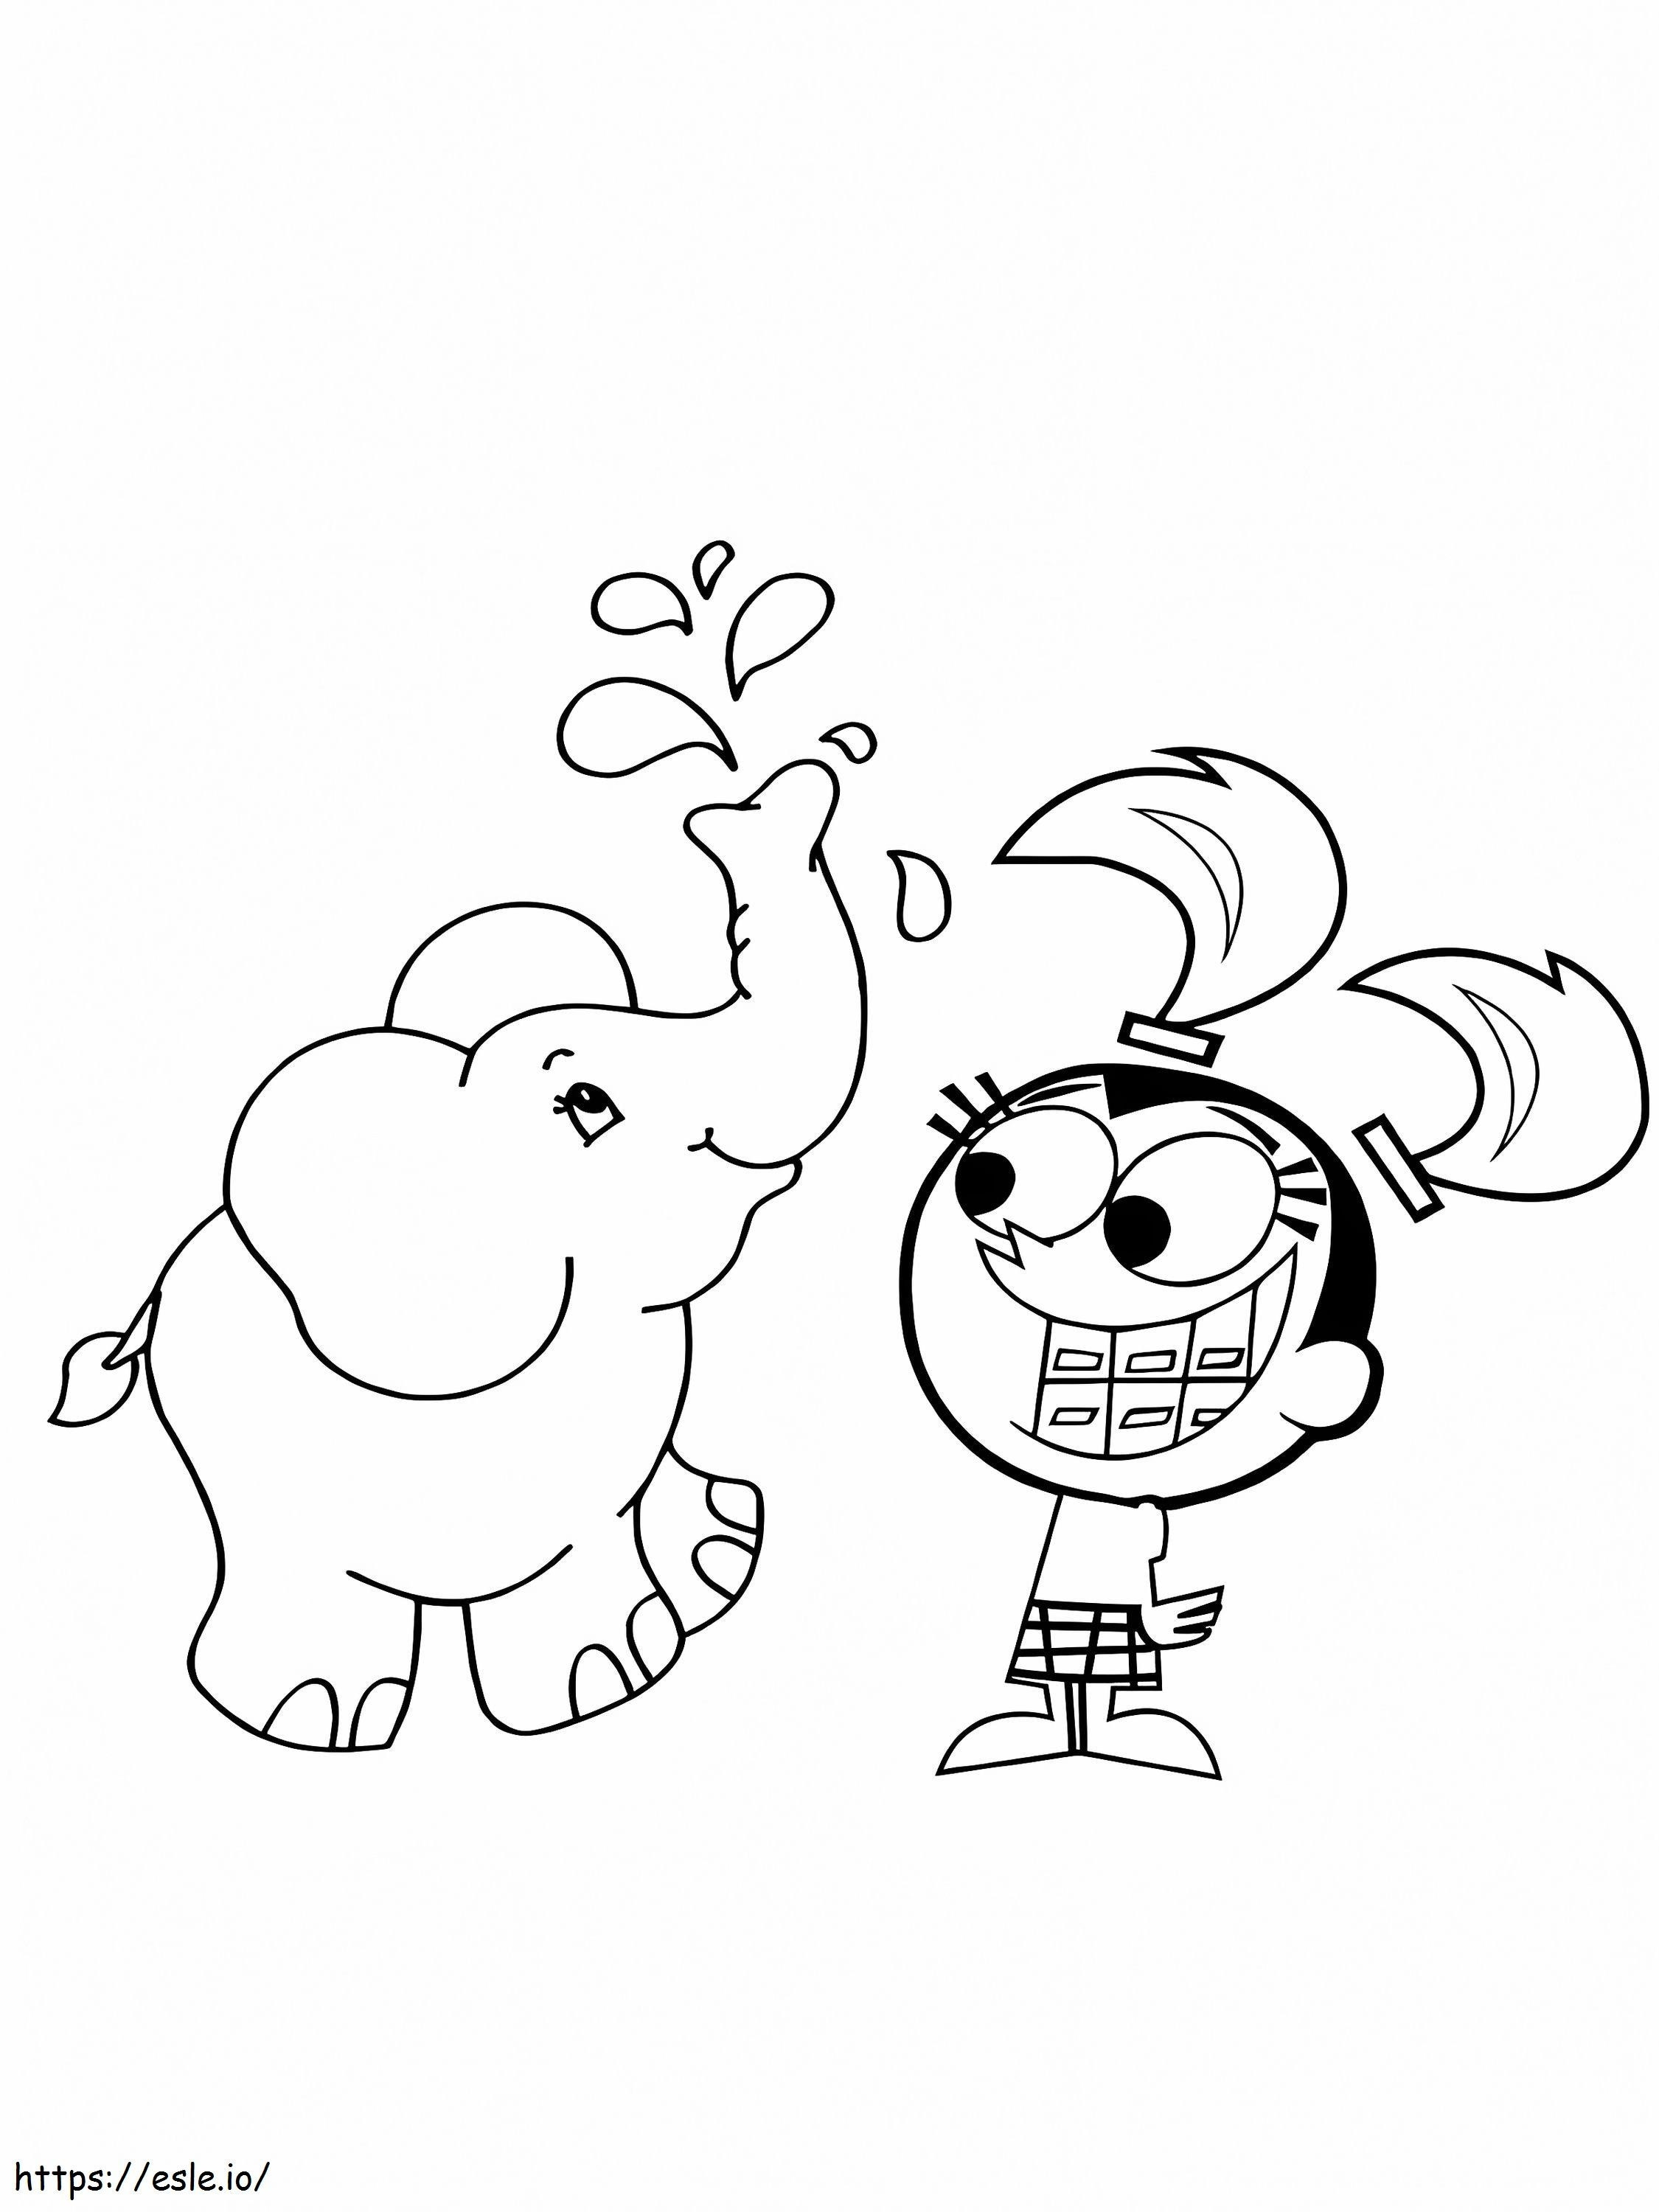 Os Padrinhos Mágicos Tootie e Elefante para colorir